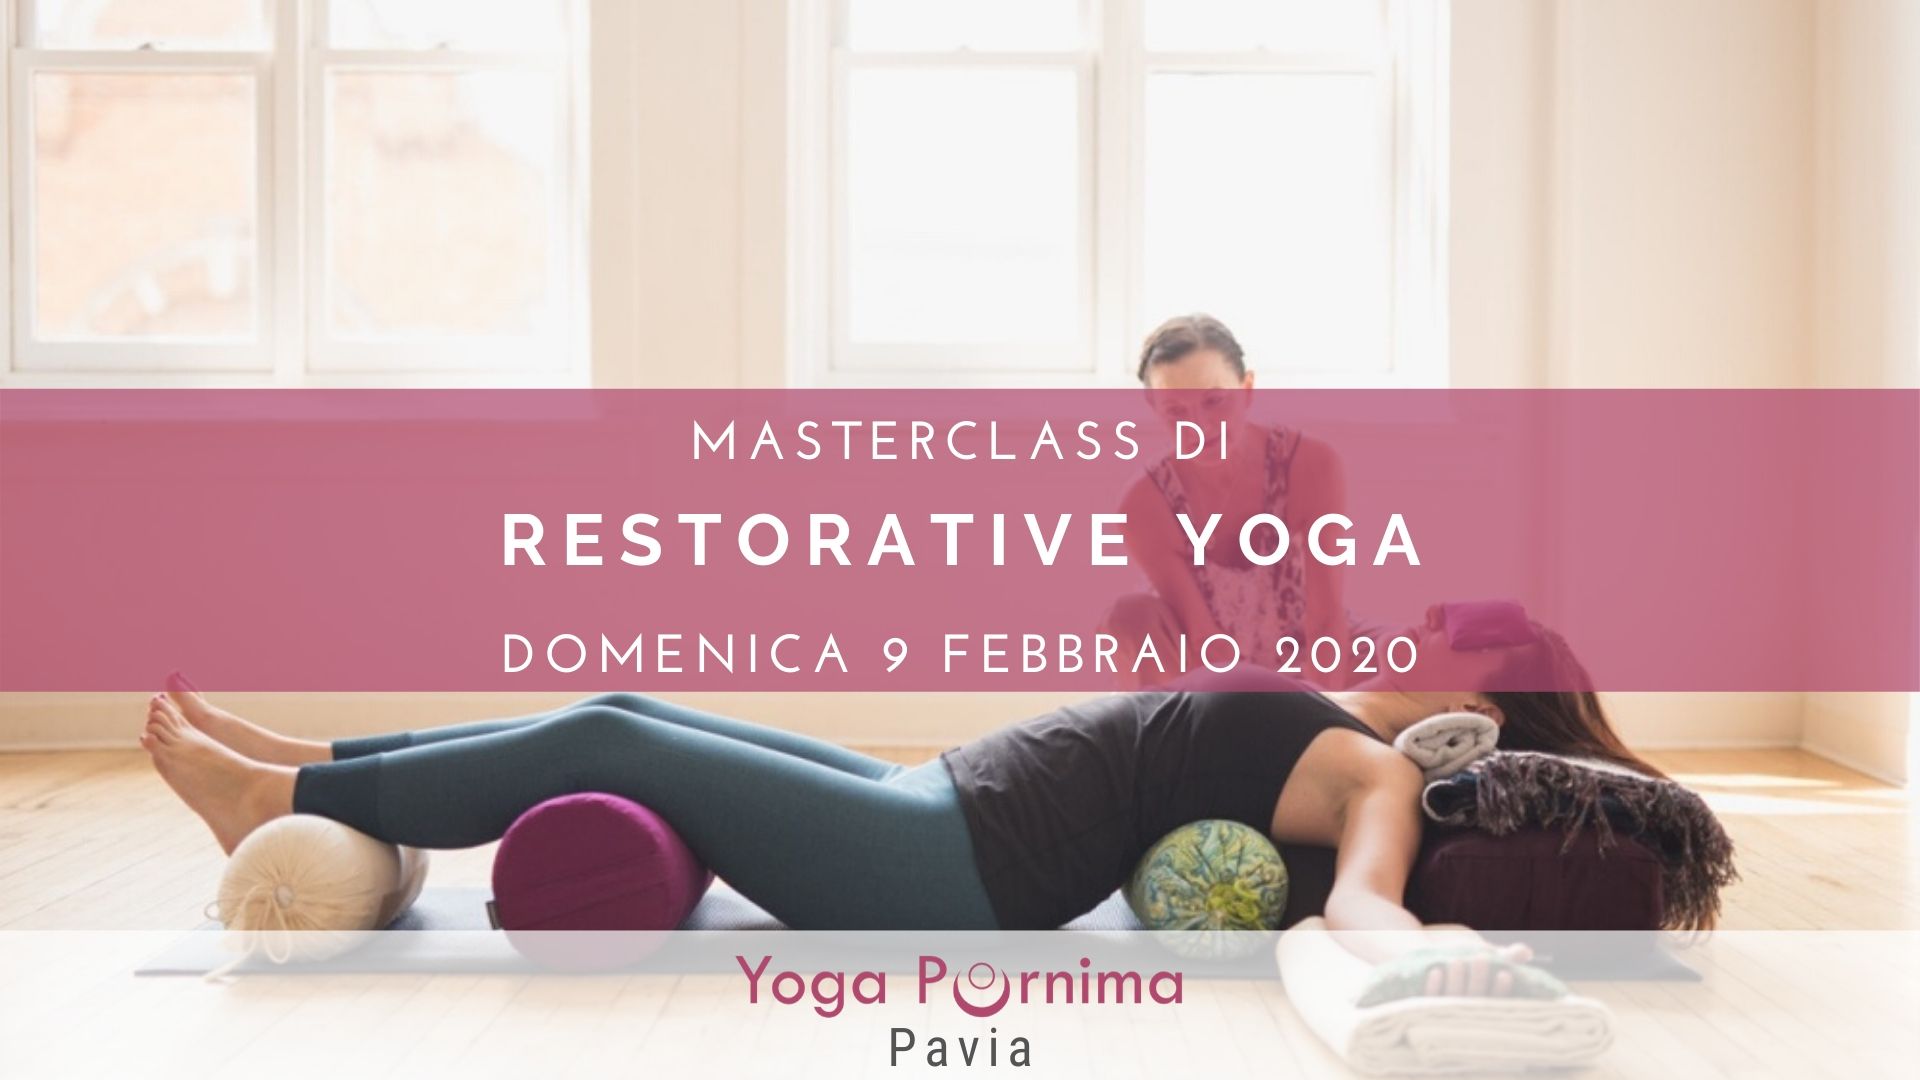 9 febbraio: masterclass di Restorative Yoga, lo yoga che rigenera